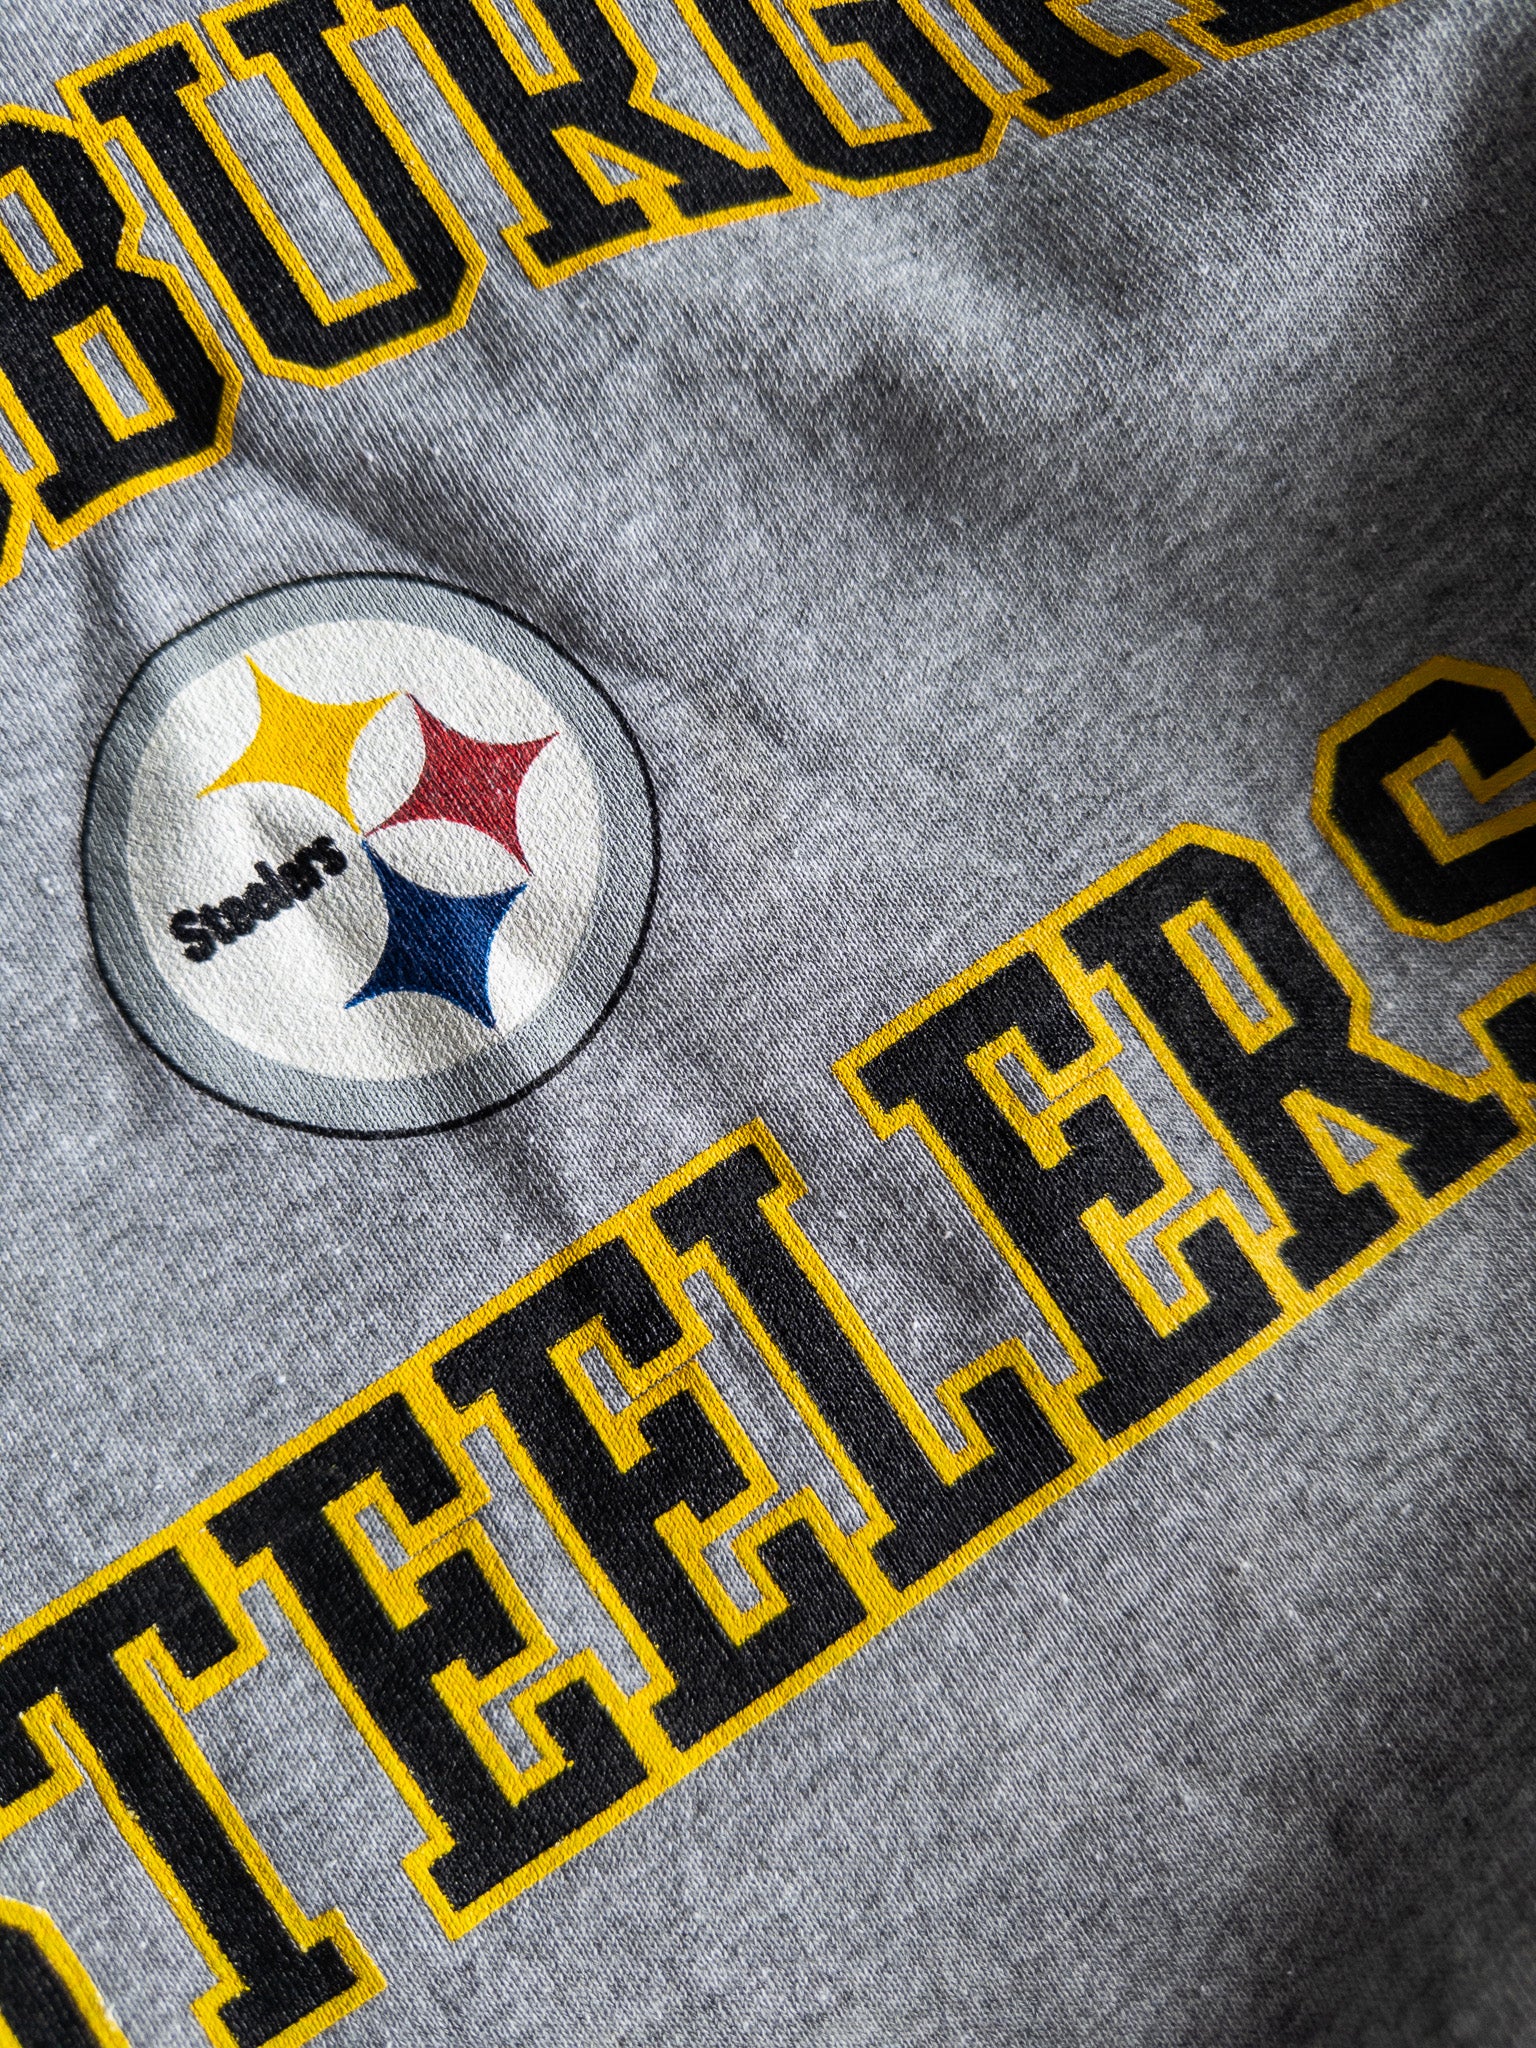 Vintage Pittsburgh Steelers Sweatshirt (L)